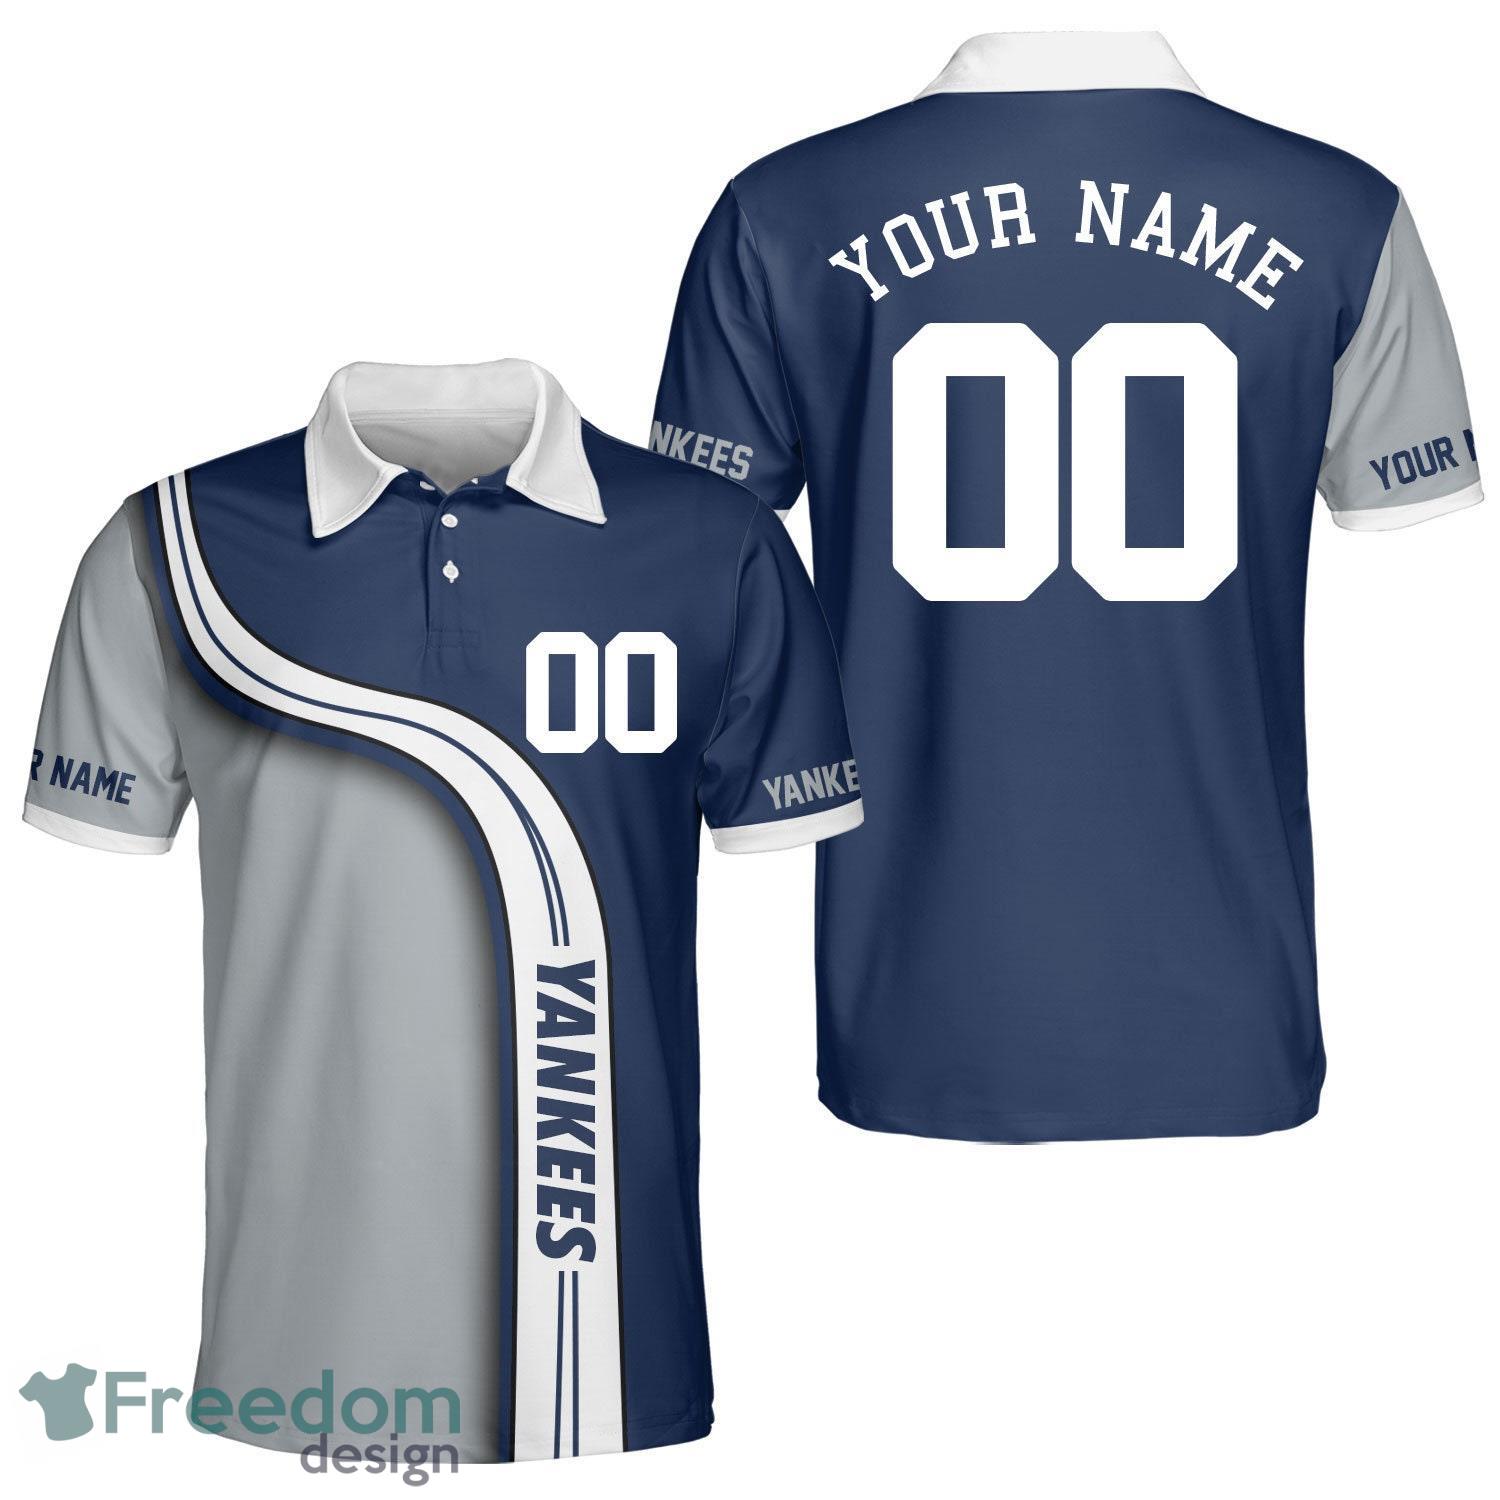 NY Yankees Shirt, New York City Gift For Baseball Lovers - Bring